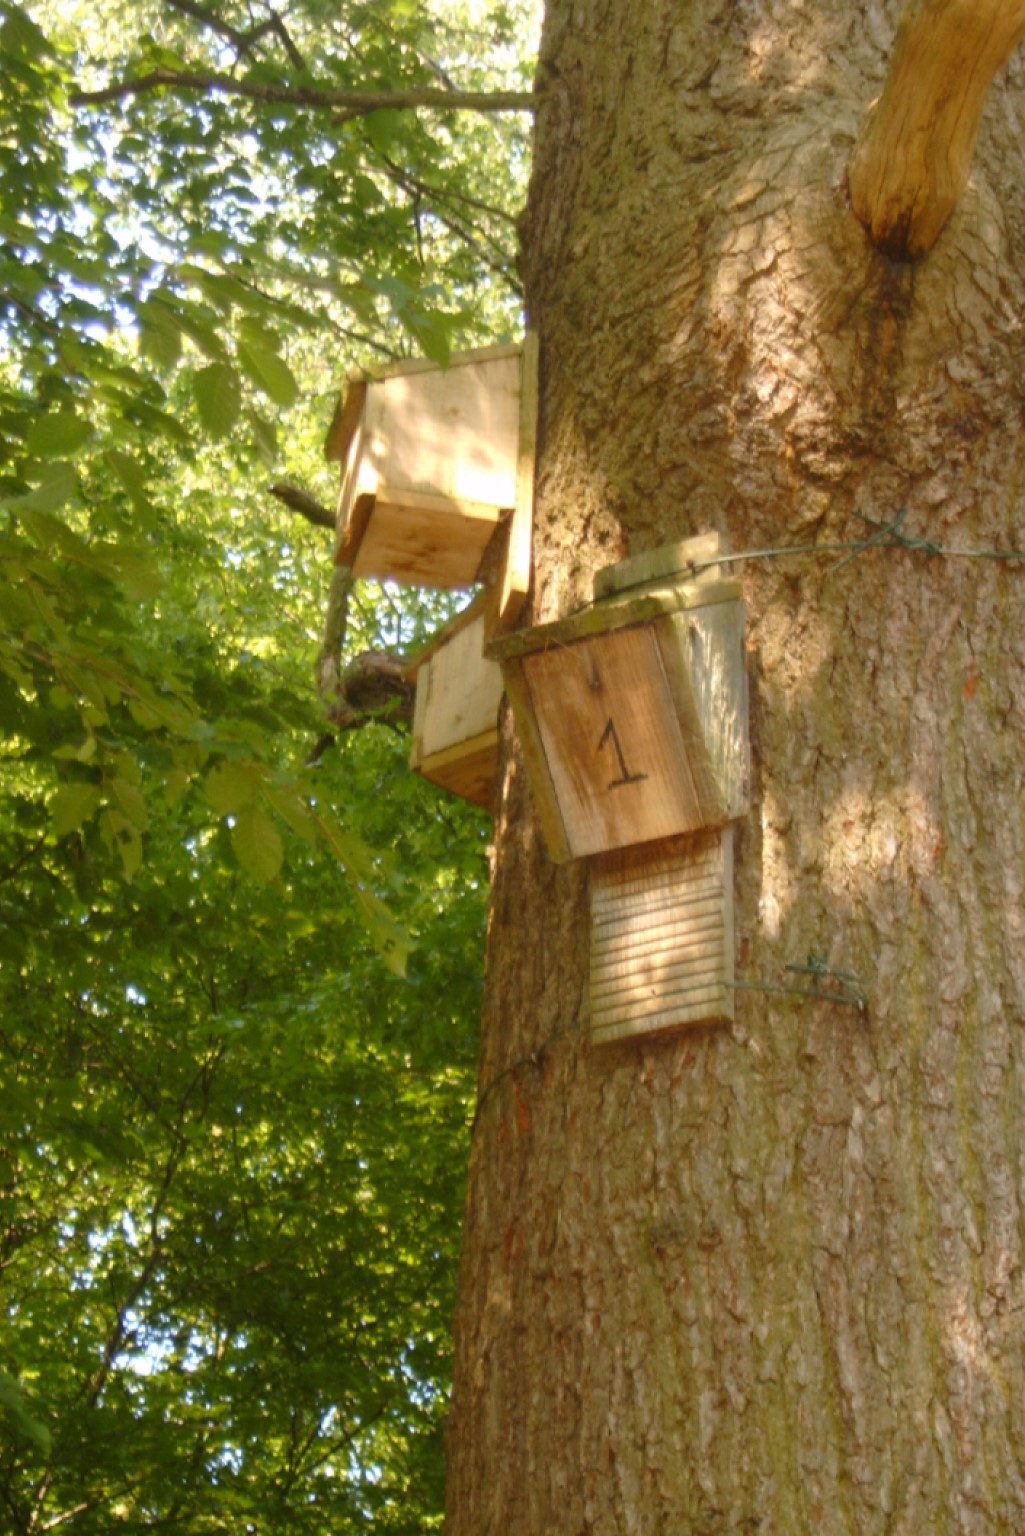 Bat boxes in situ on tree